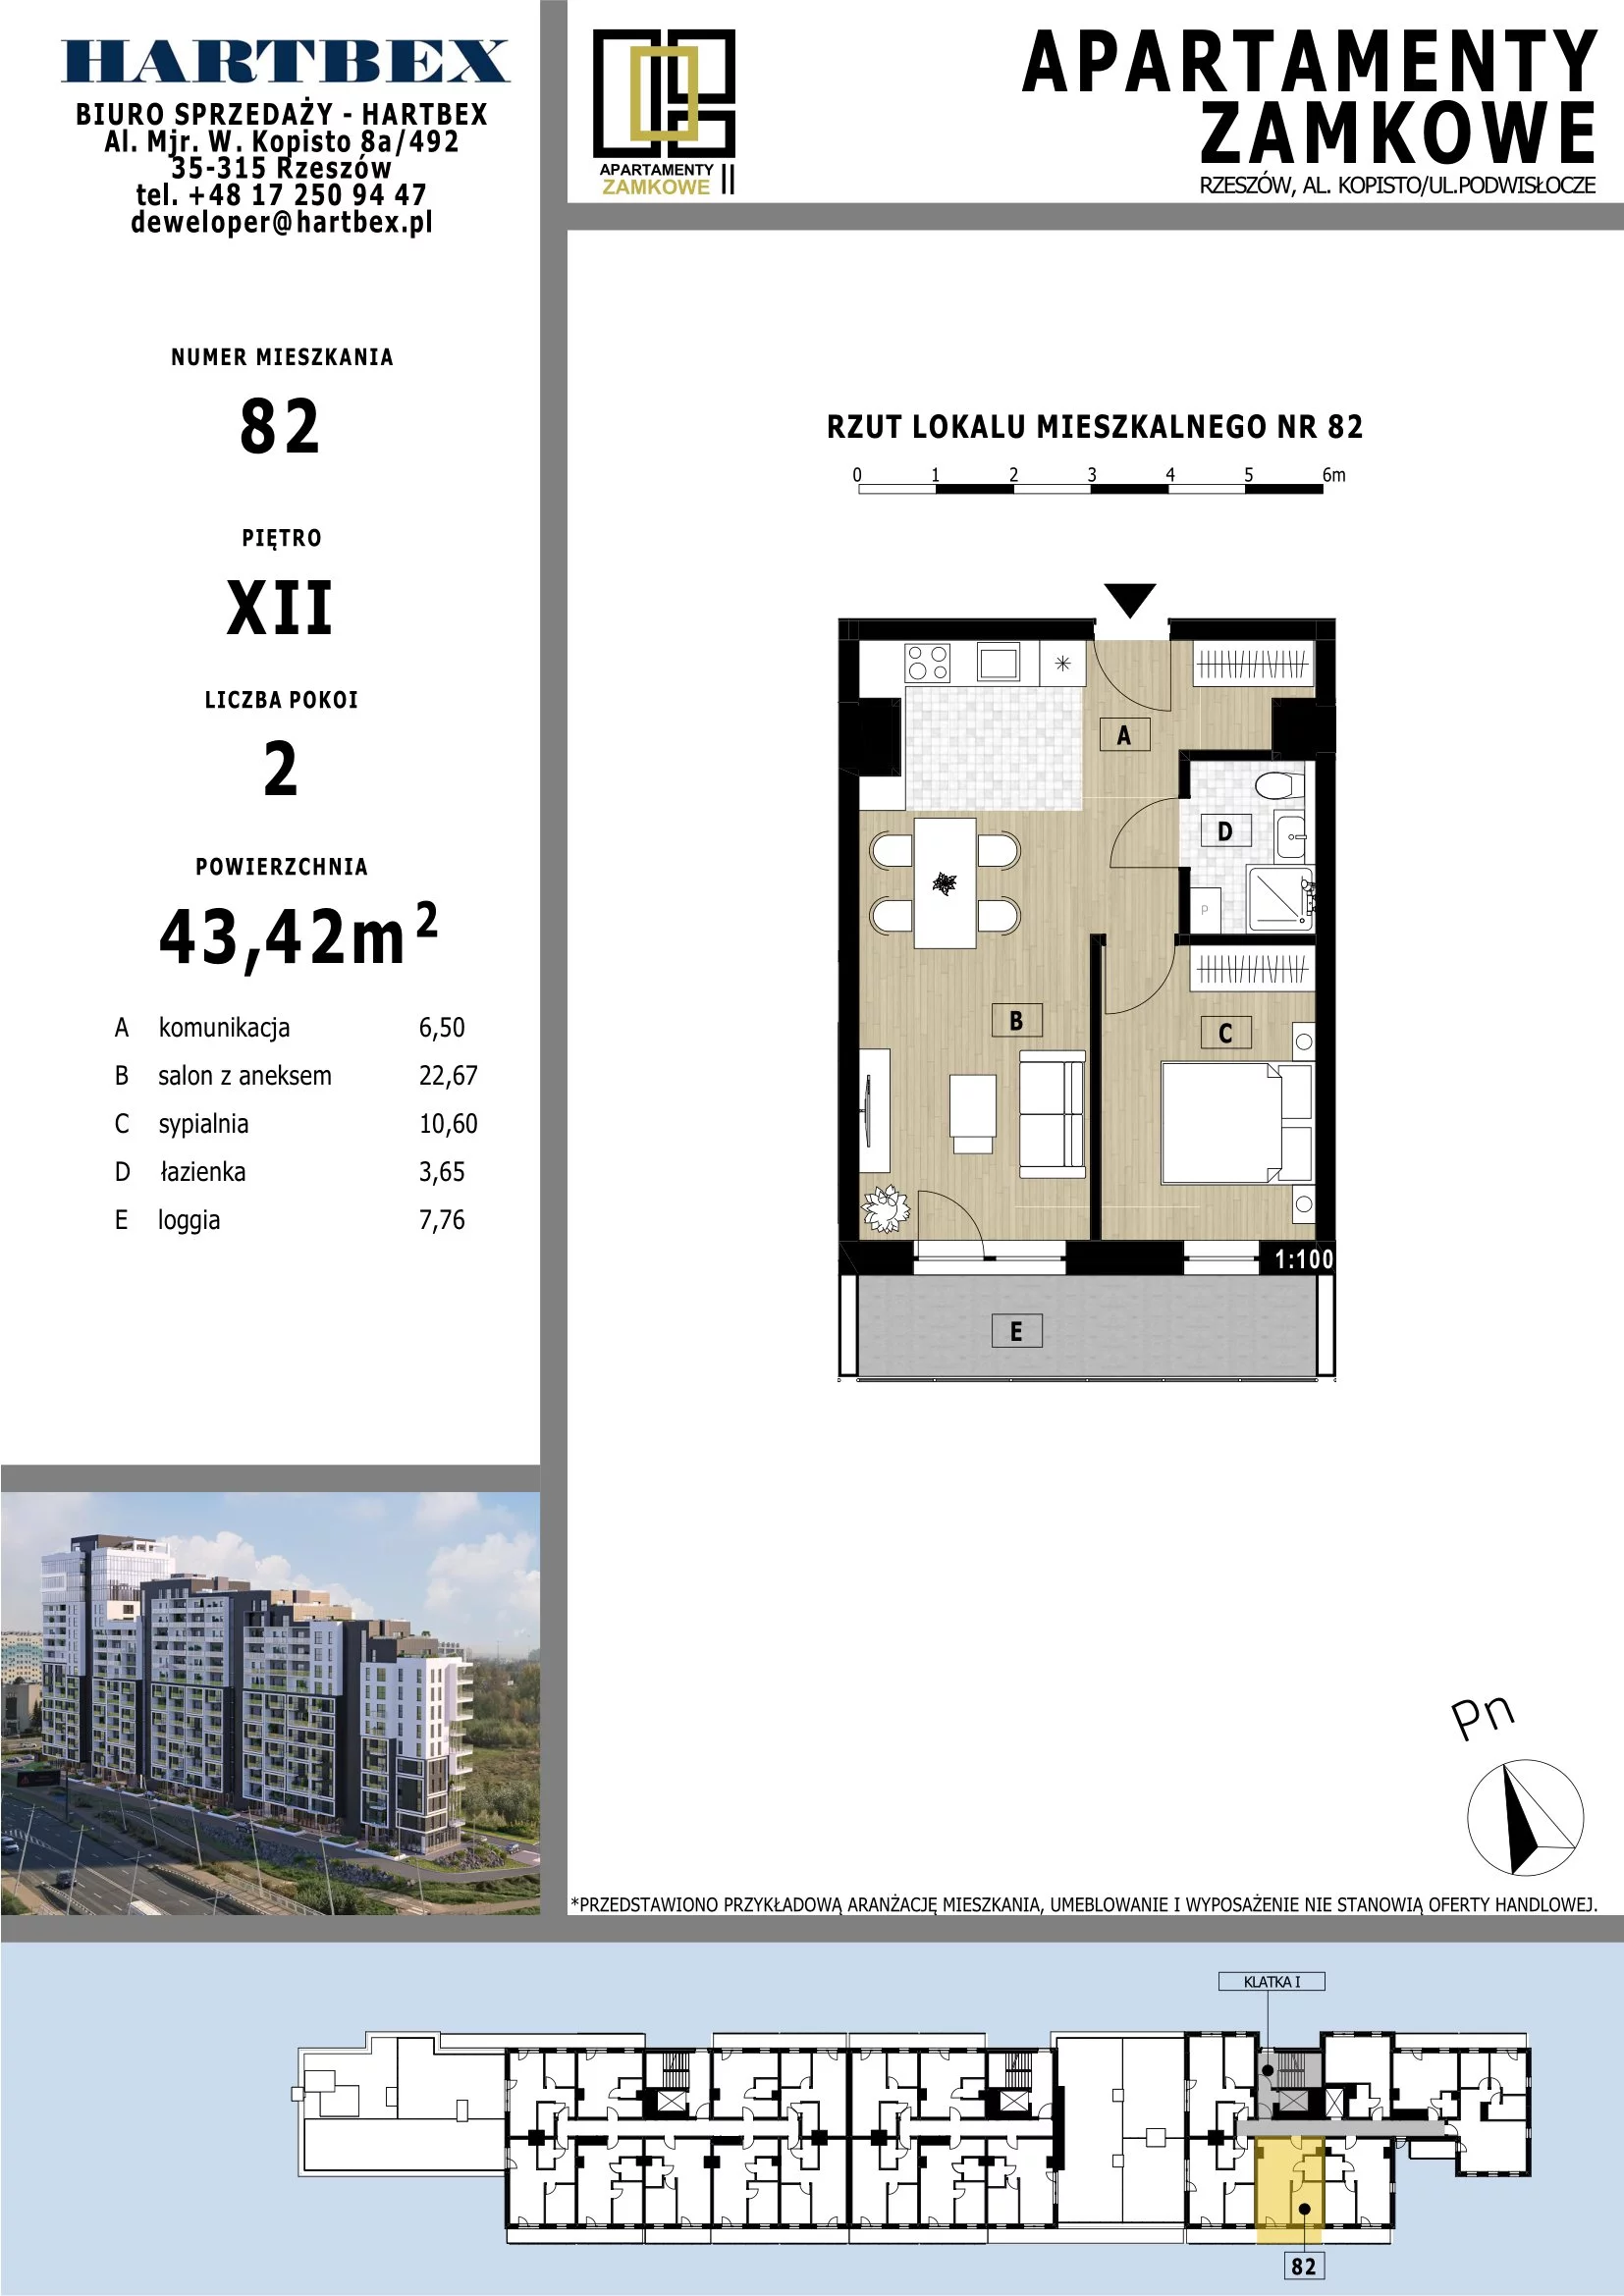 Mieszkanie 43,42 m², piętro 12, oferta nr 82, Apartamenty Zamkowe II, Rzeszów, Nowe Miasto, al. mjr W. Kopisto 11